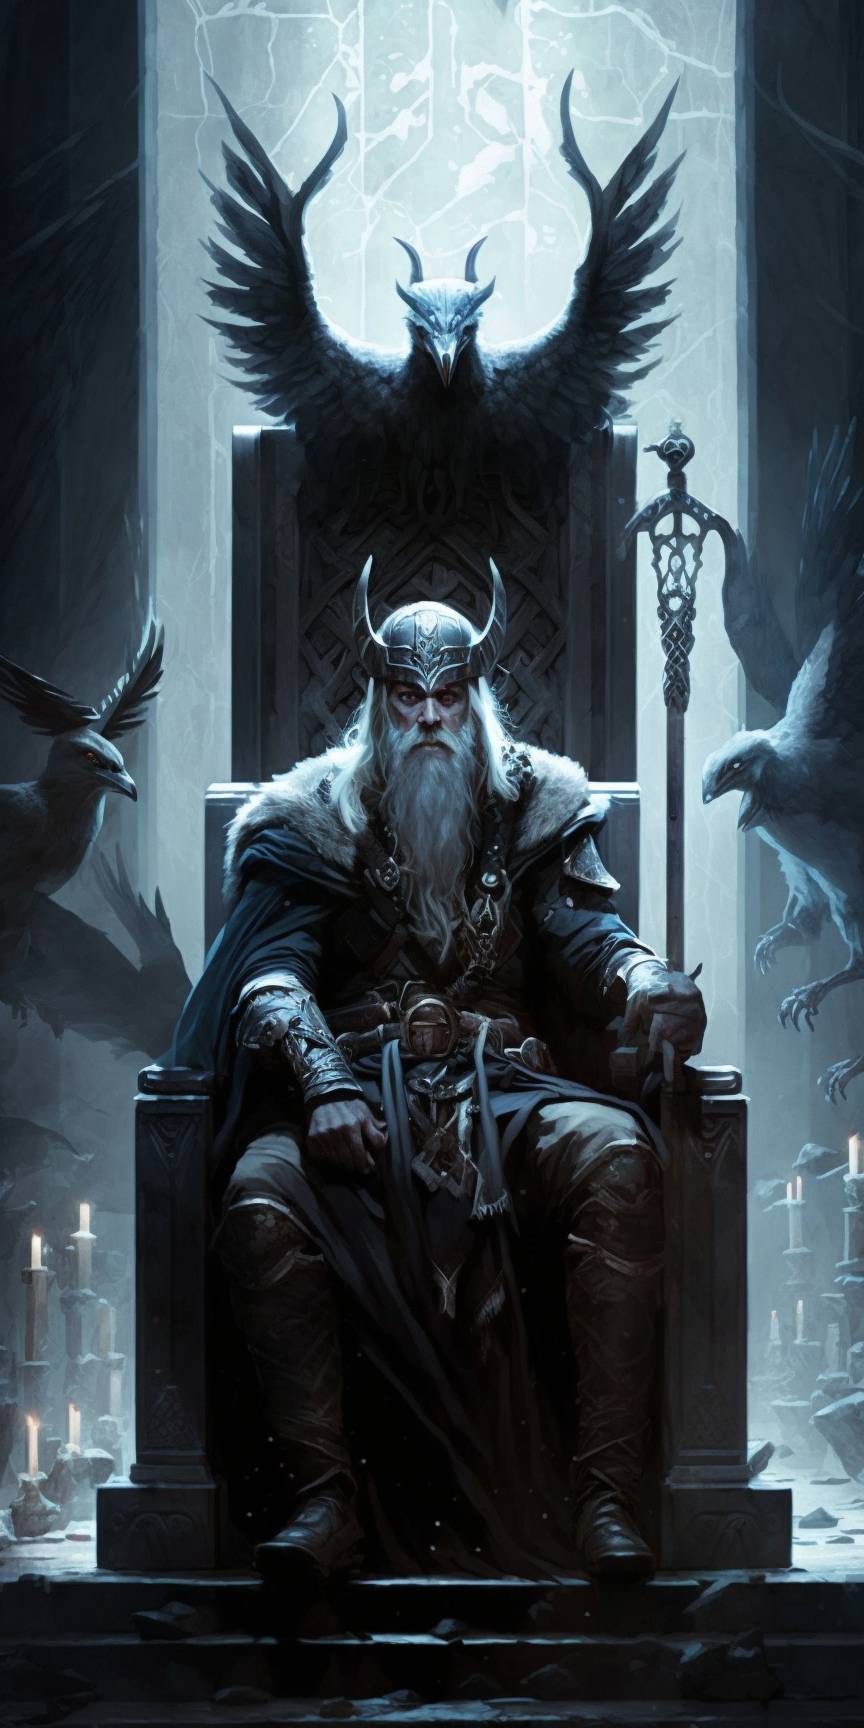 Odin Thor by AllAiAlways on DeviantArt